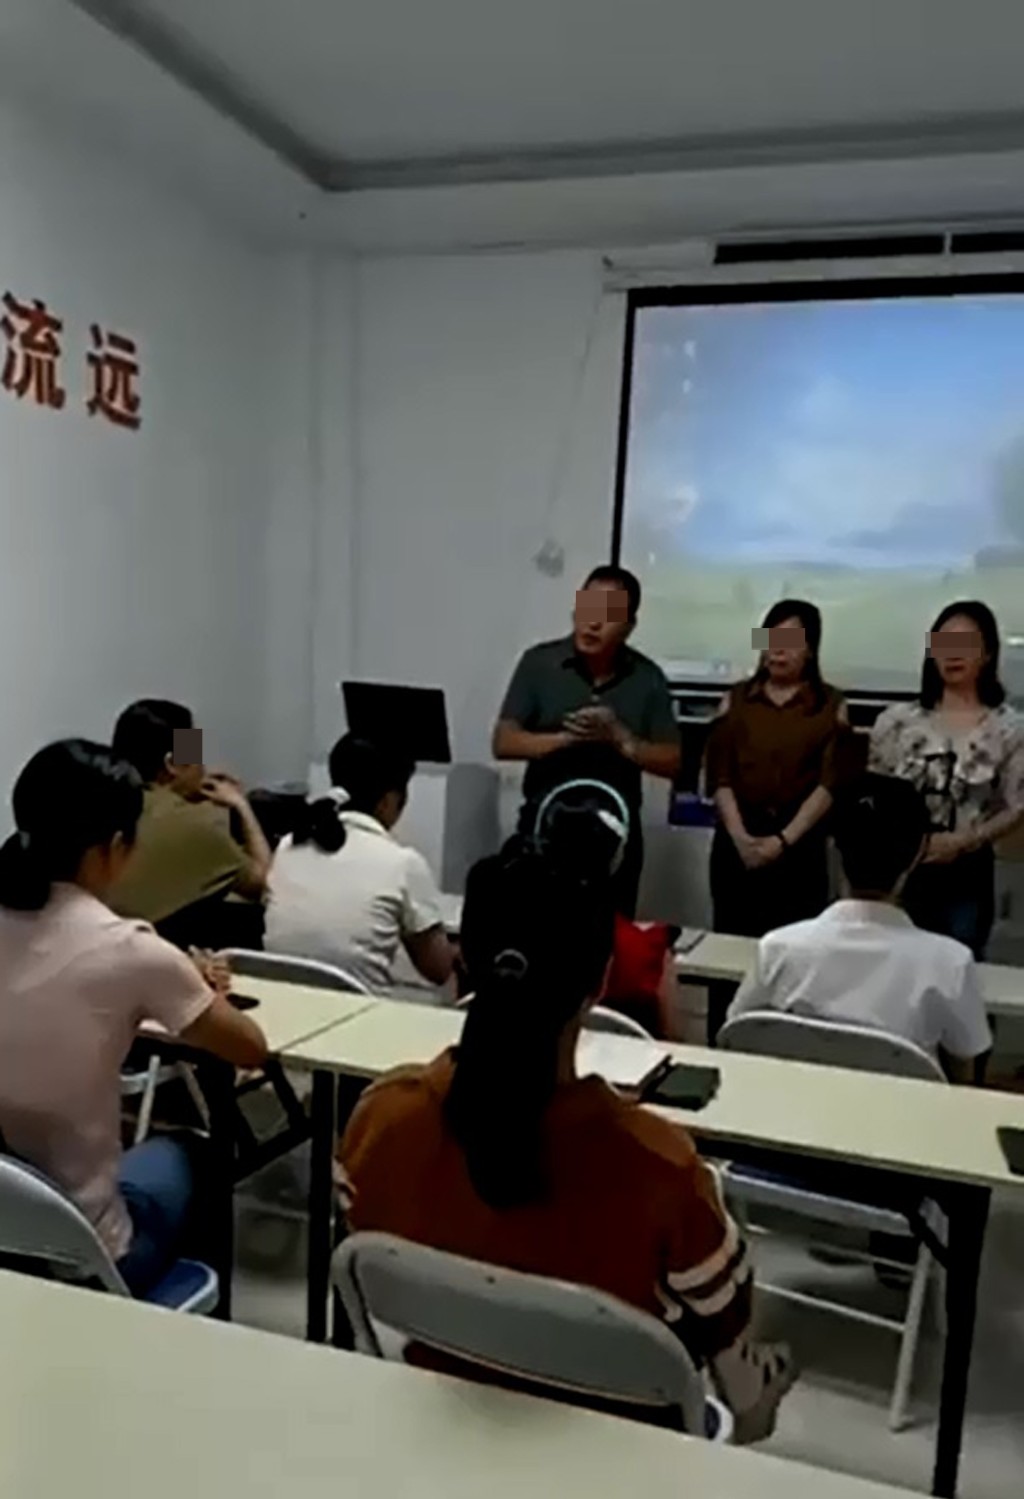 深圳中介公司發放短片，可見3名負責人(站立者)向多名女子(坐下者)介紹赴港工作的情況。